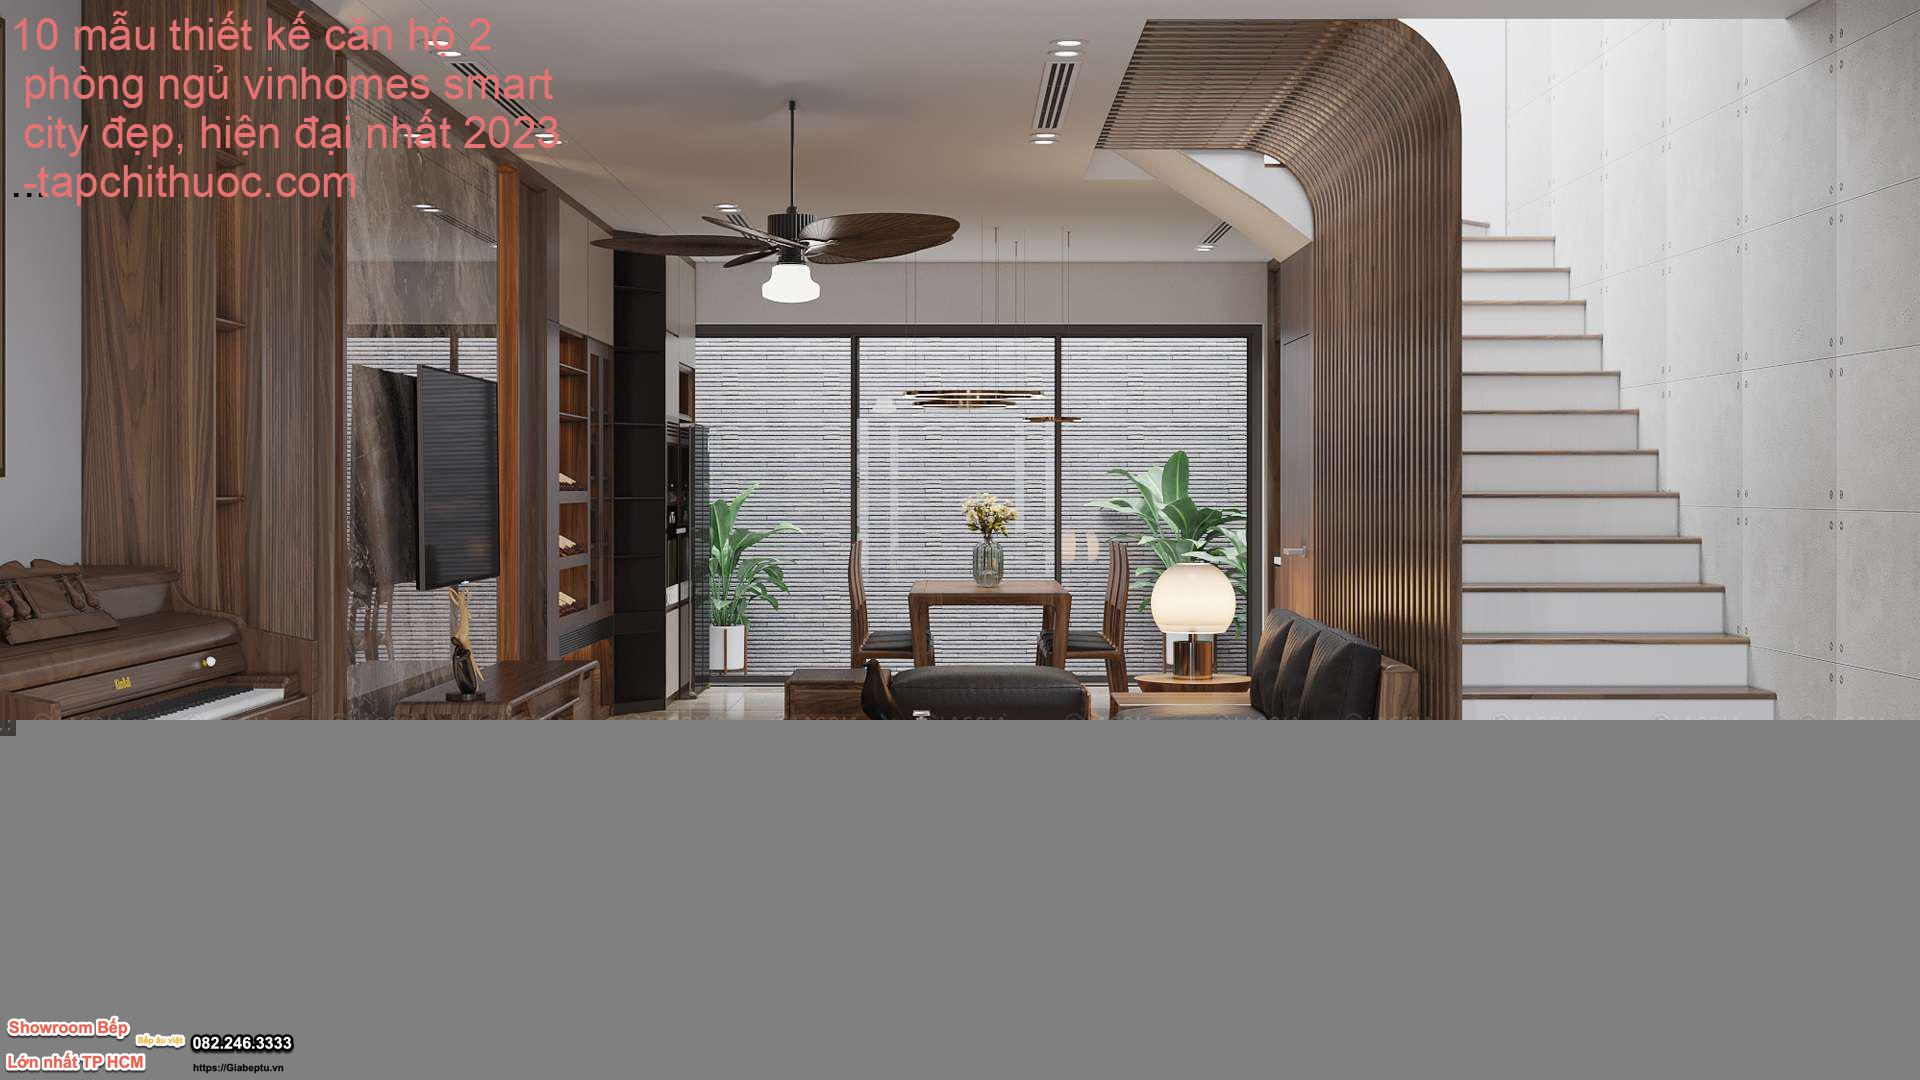 10 mẫu thiết kế căn hộ 2 phòng ngủ vinhomes smart city đẹp, hiện đại nhất 2023